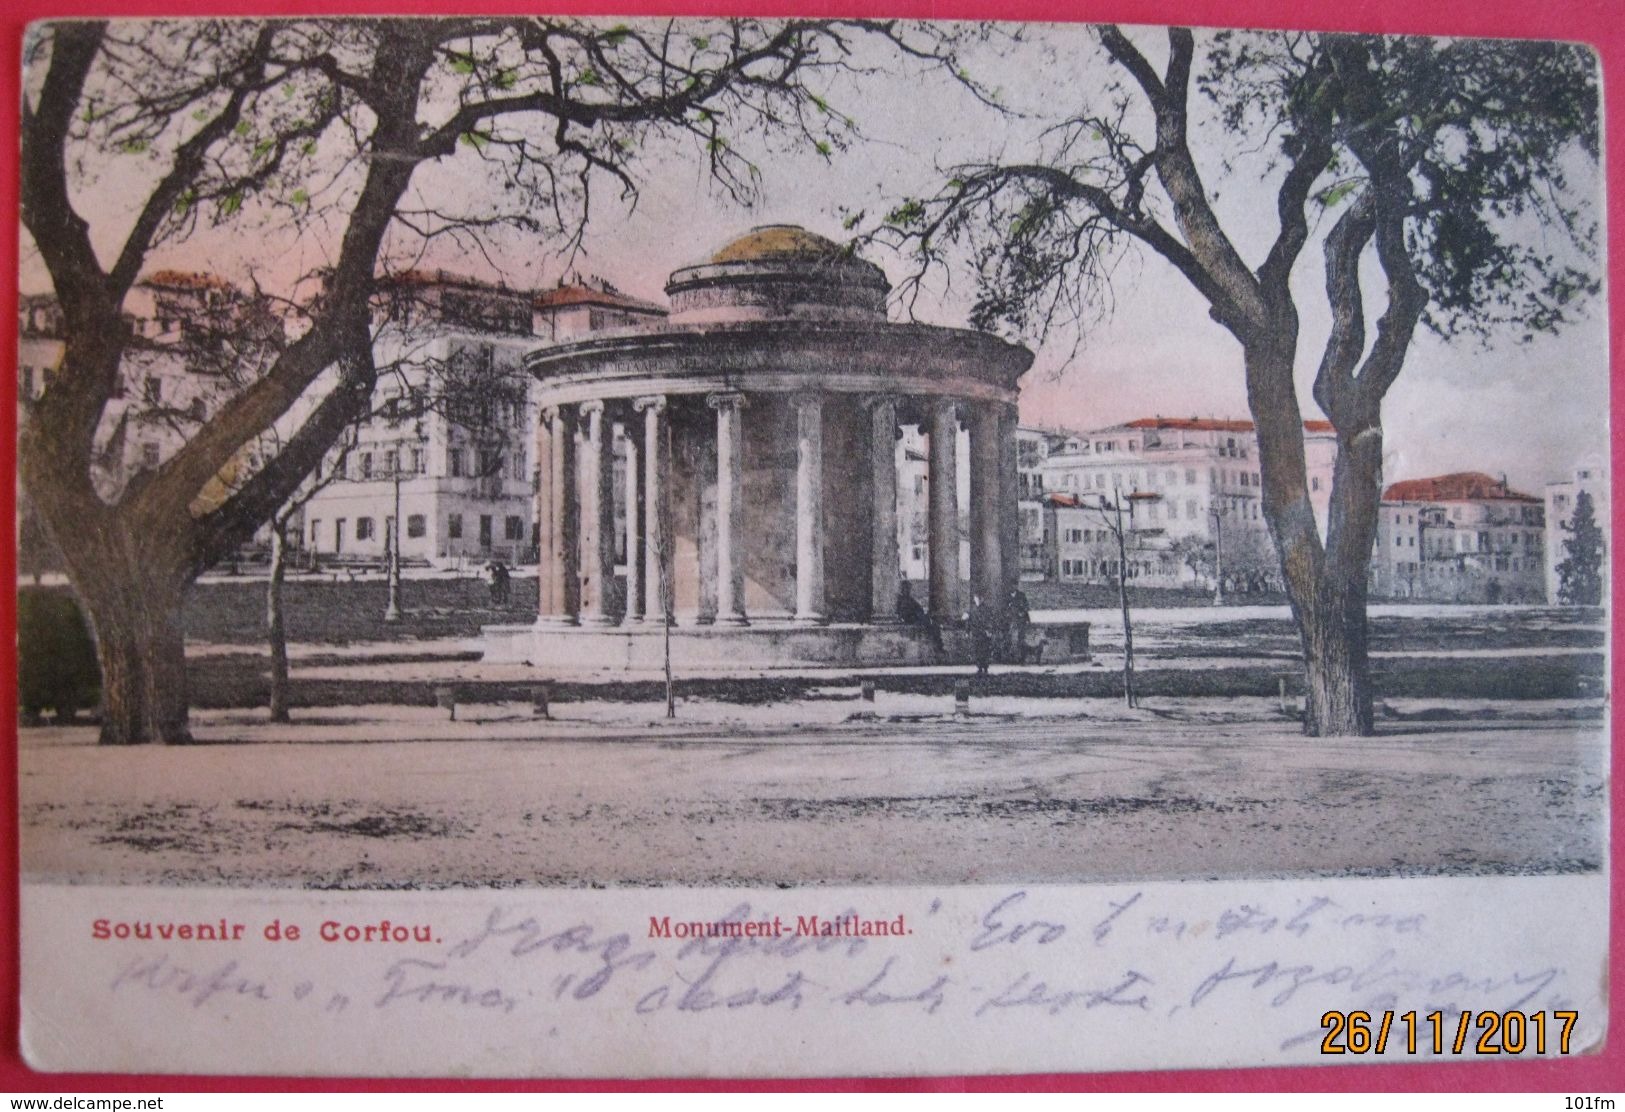 SOUVENIR DE CORFOU - MONUMENT MAITLAND 1905 - Griechenland